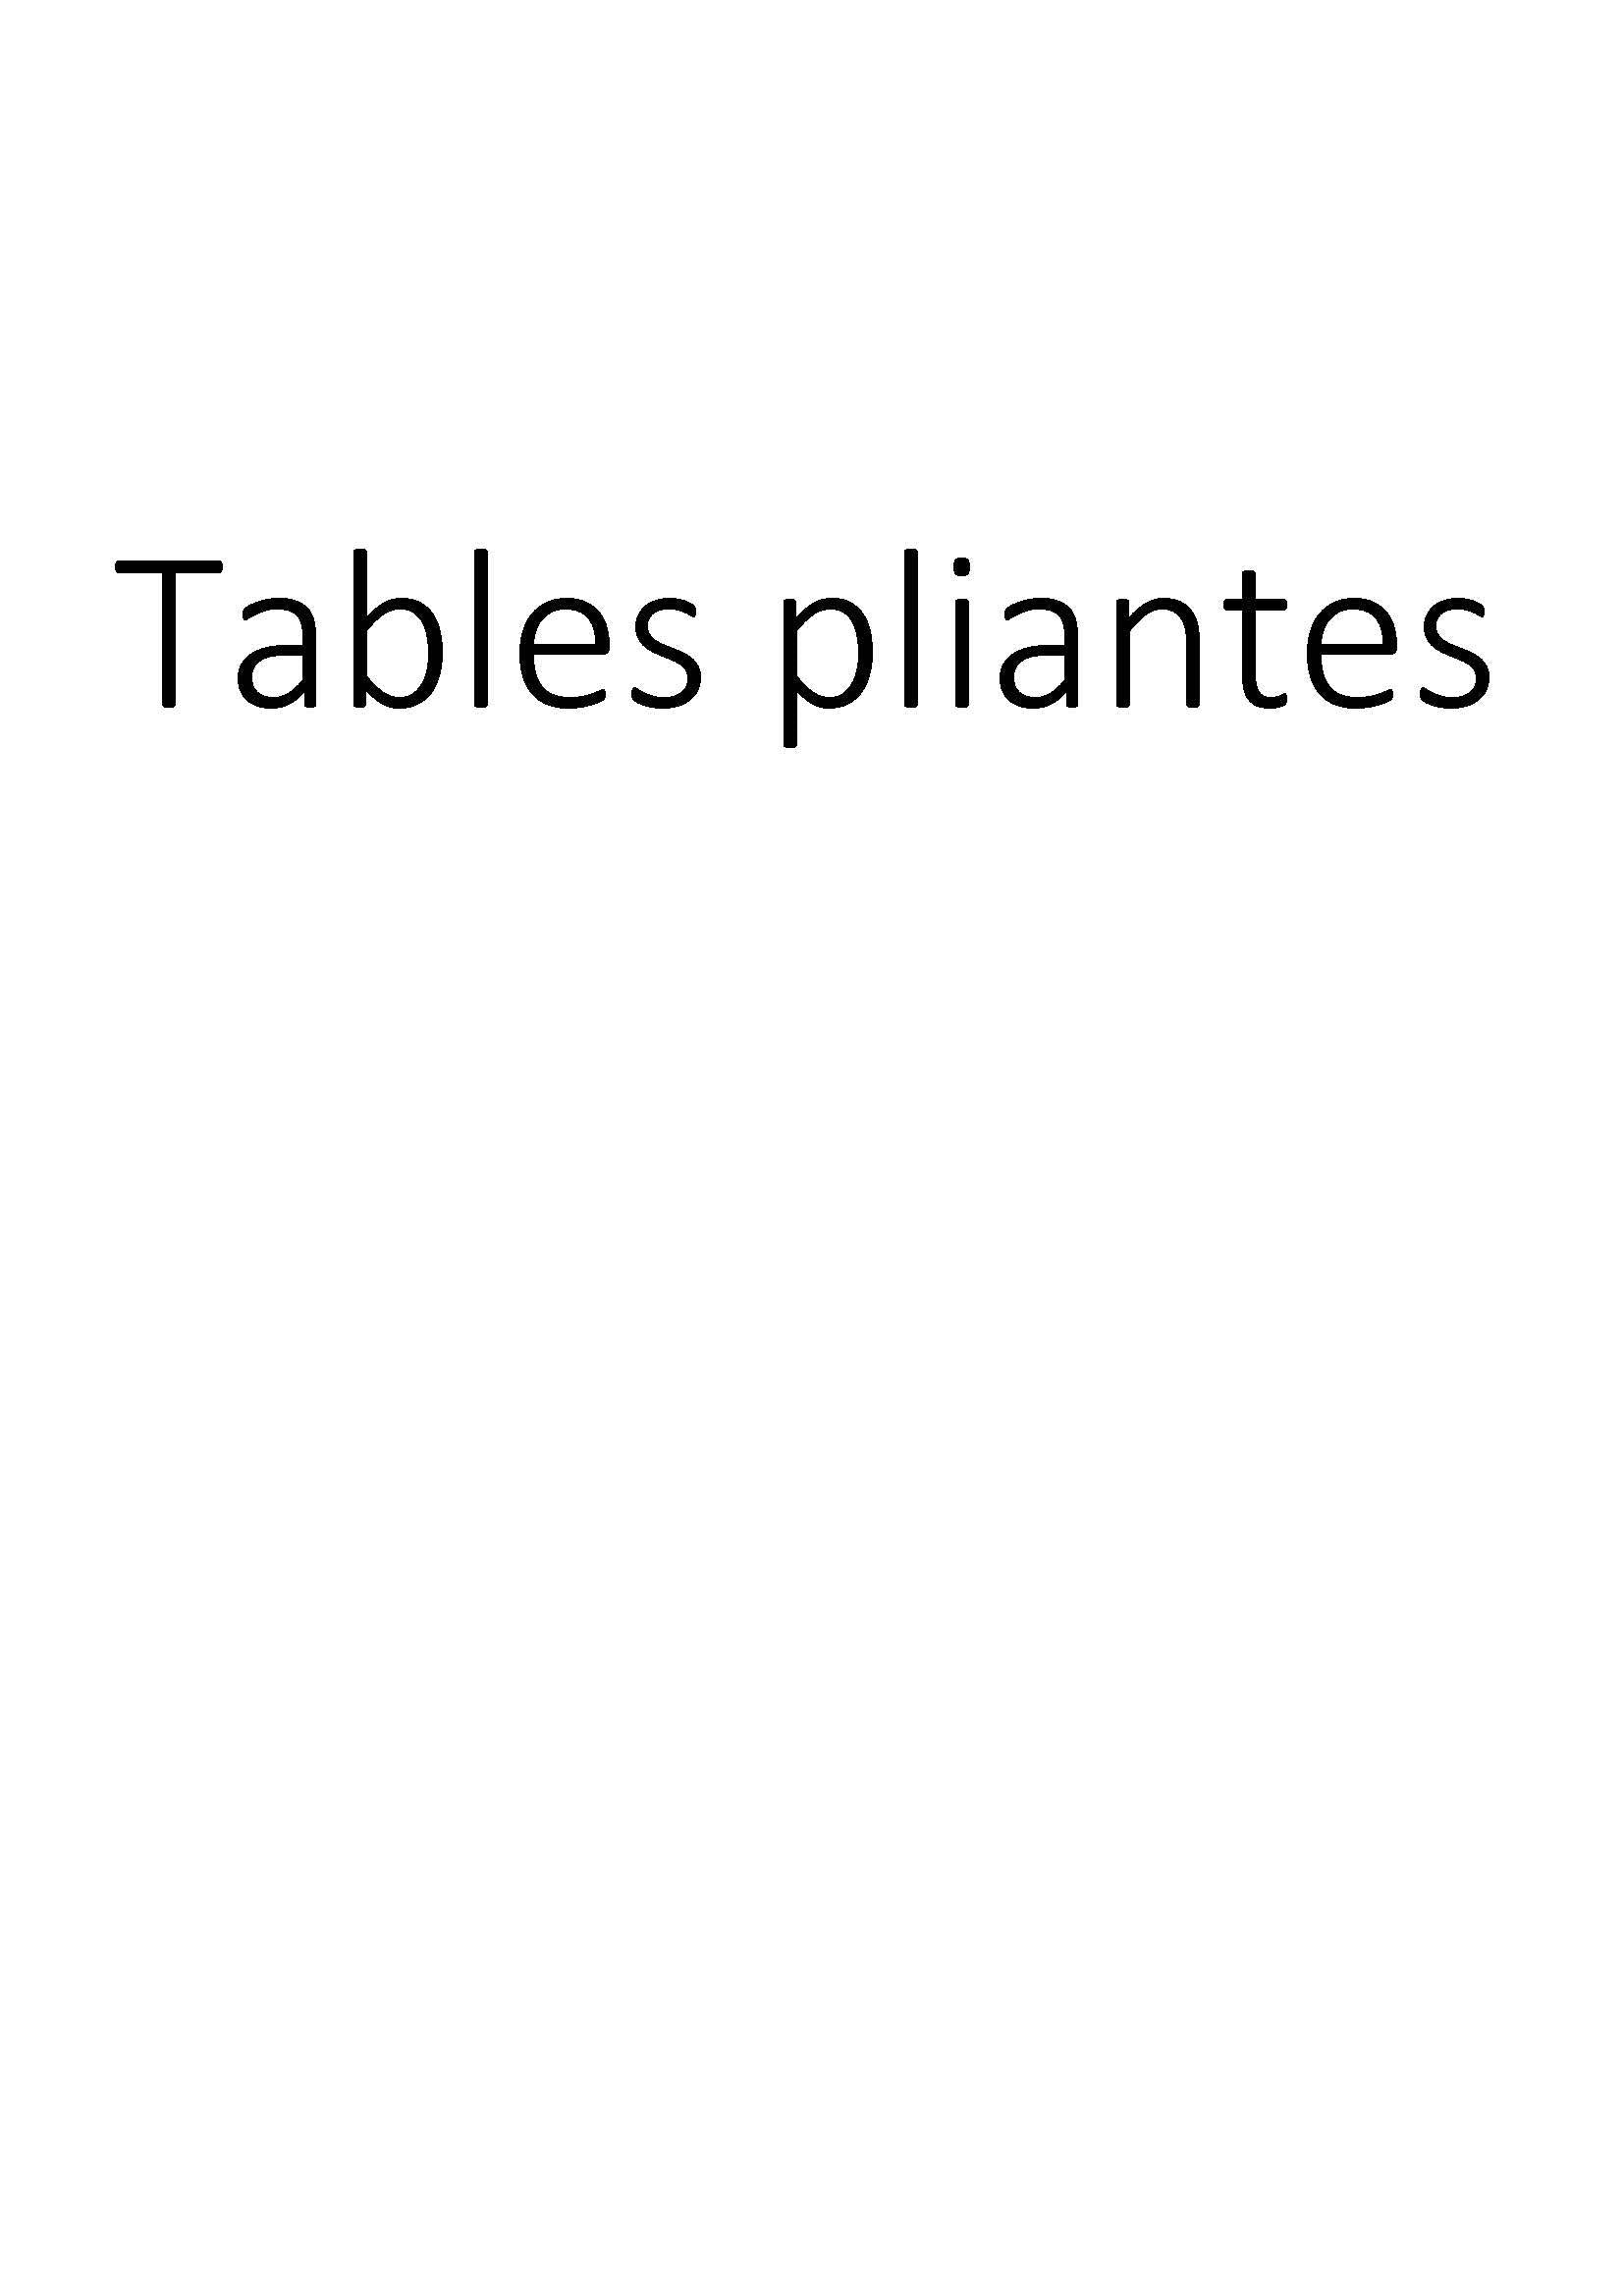 Tables pliantes clicktofournisseur.com